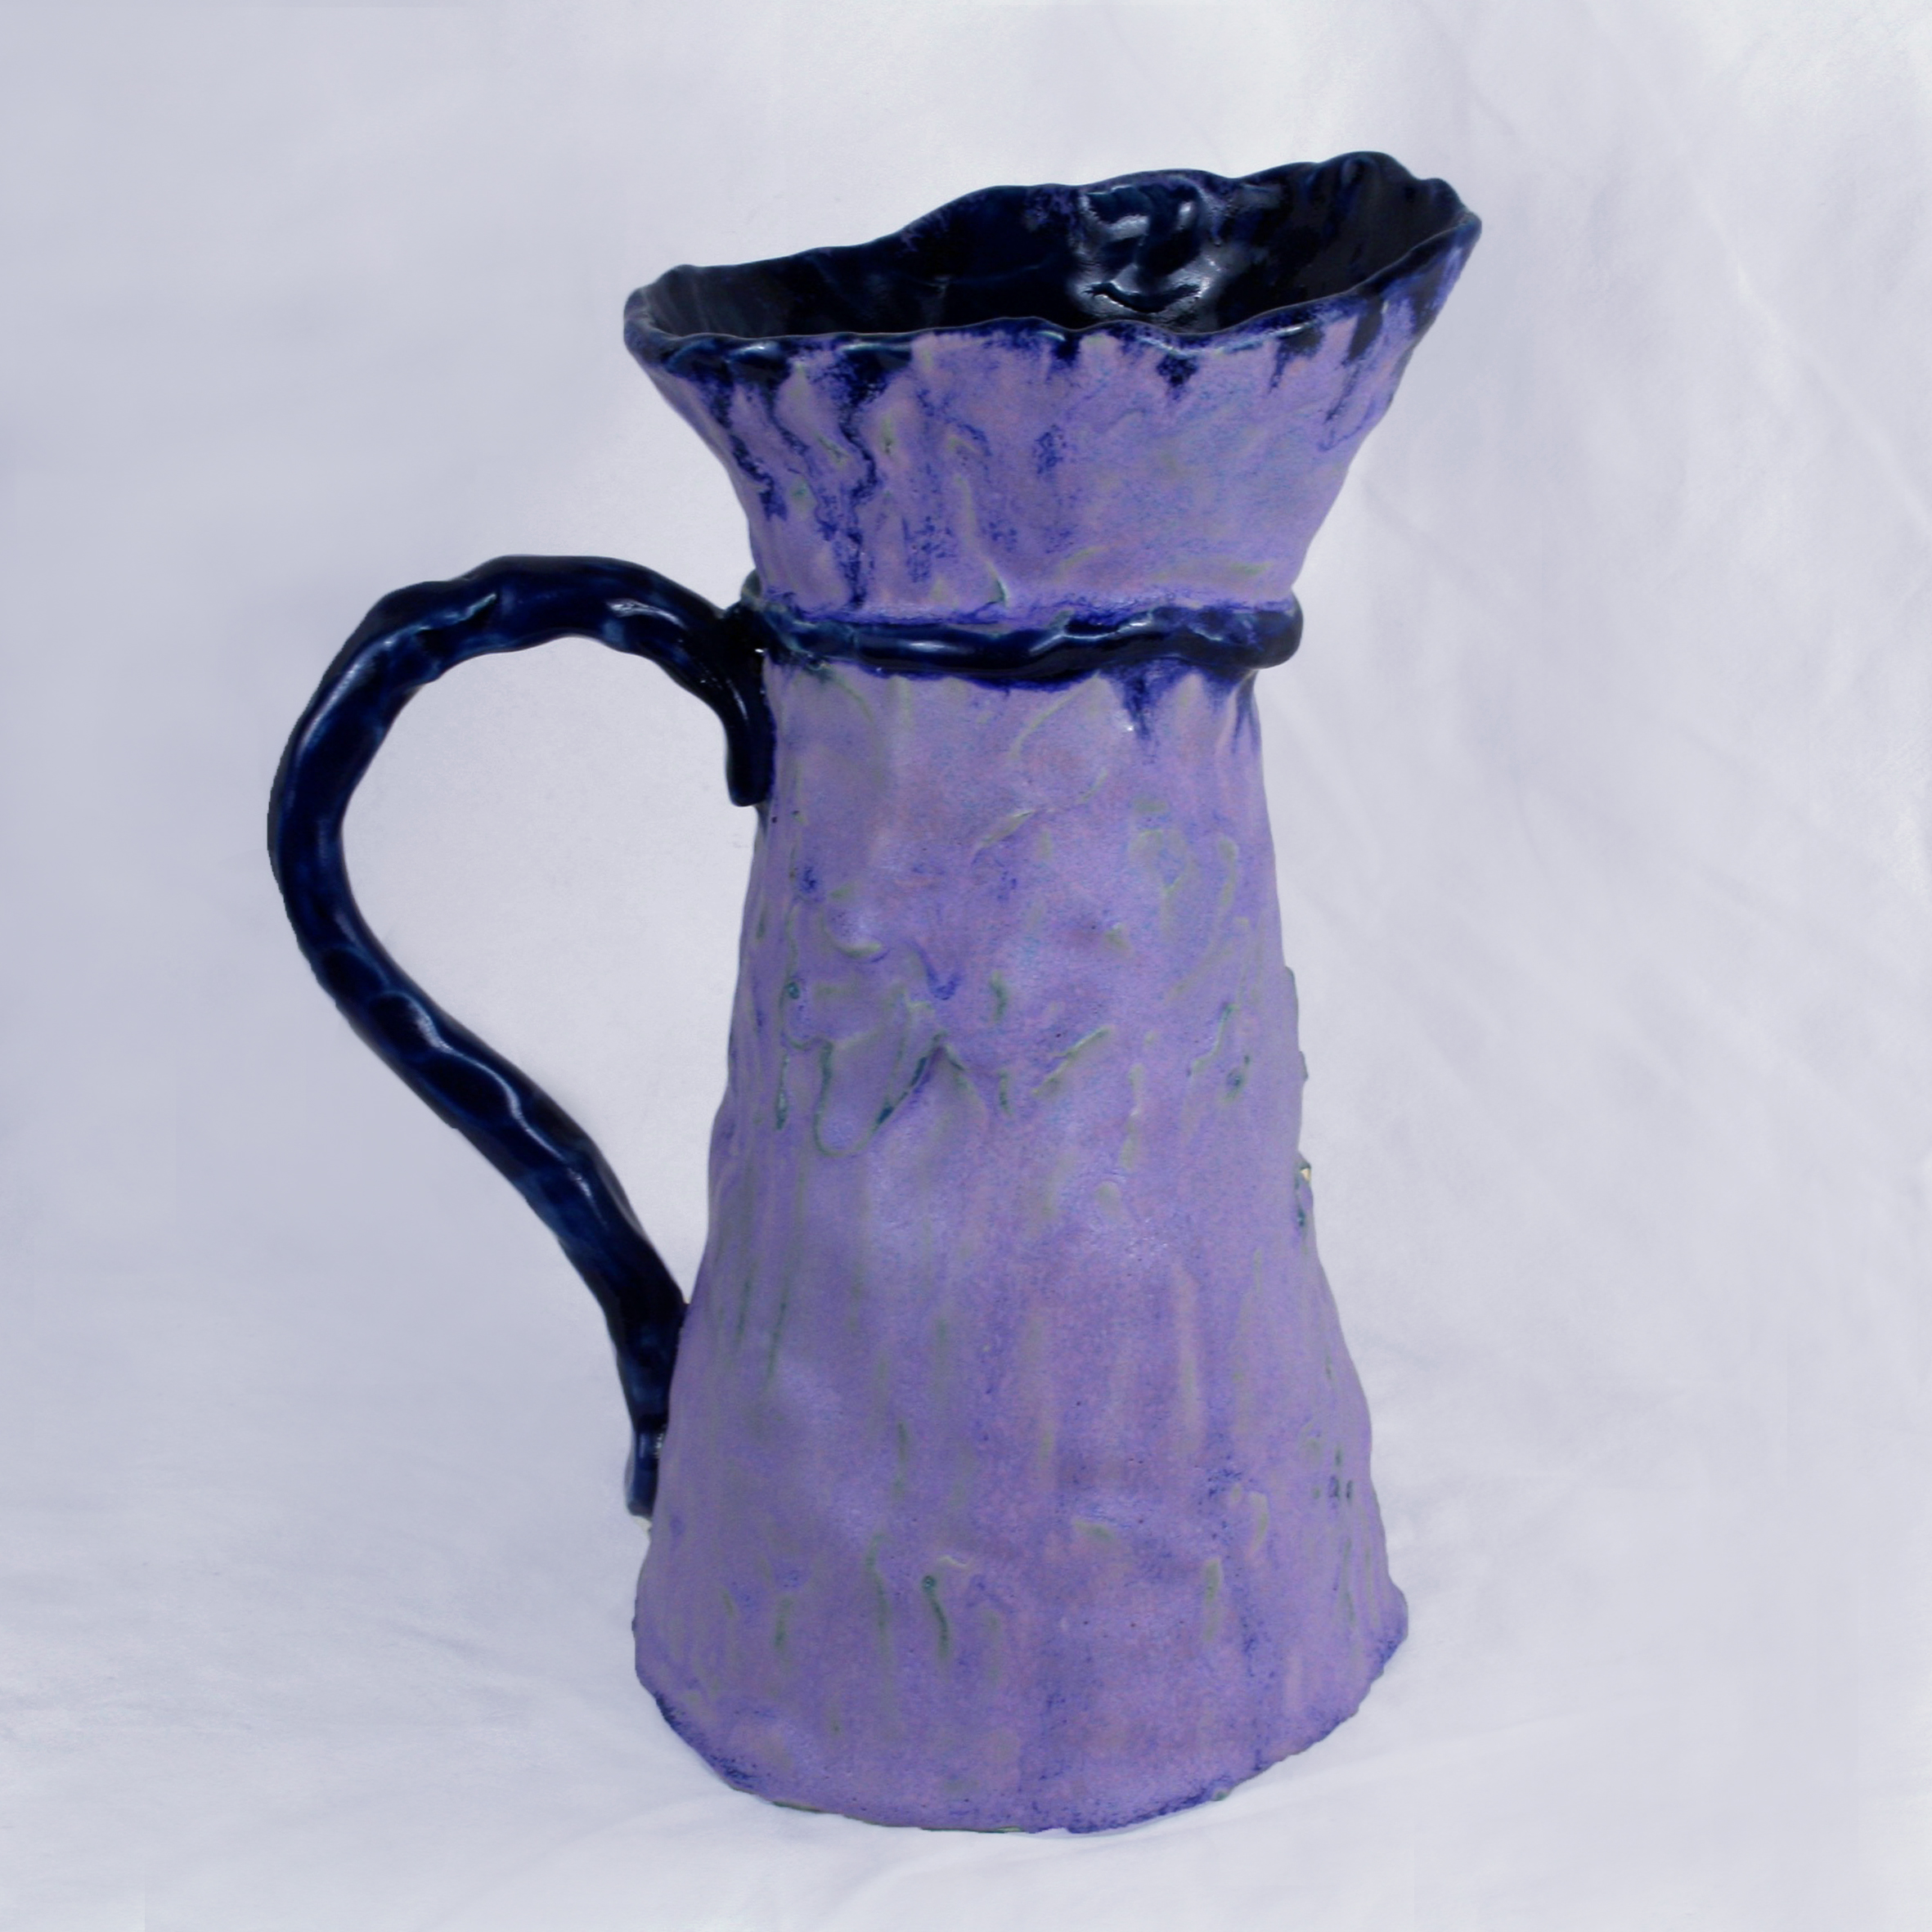 Grand vase pichet violet en grès modelé 1,2l/H26cm